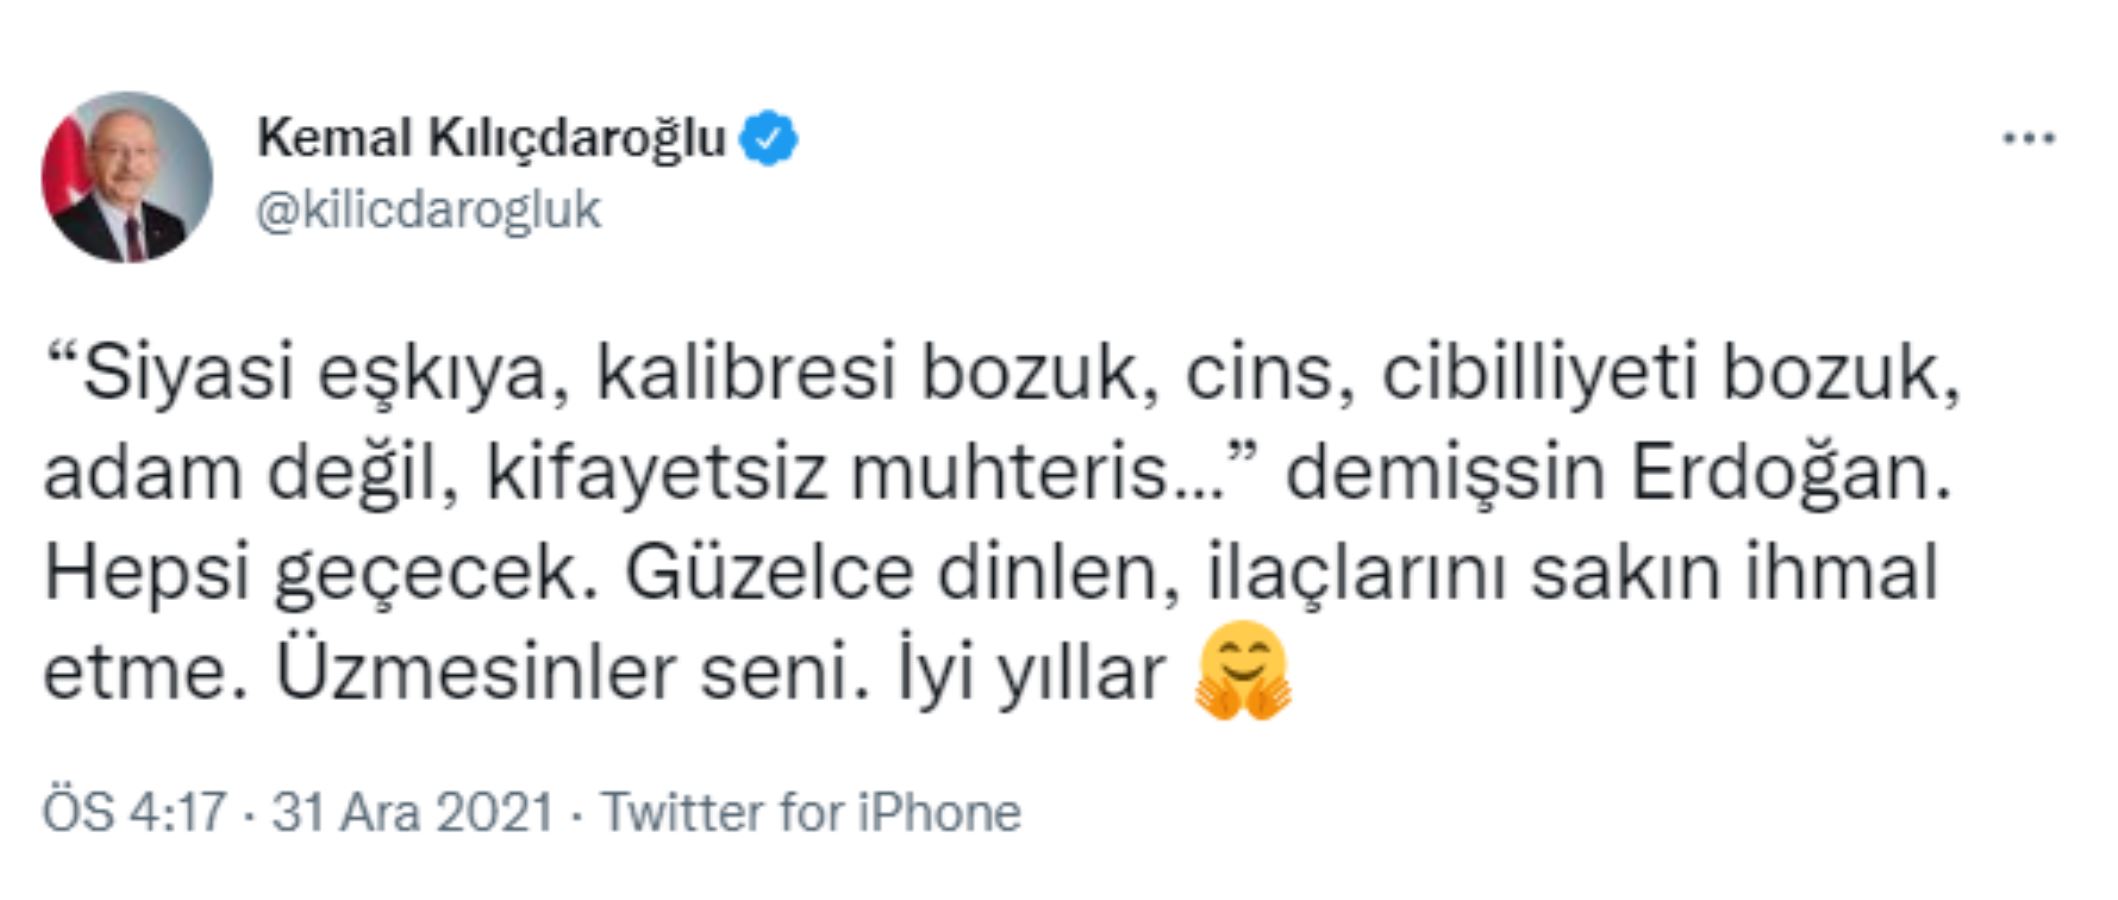 Kılıçdaroğlu'ndan, Erdoğan'a sert yanıt: İlaçlarını sakın ihmal etme